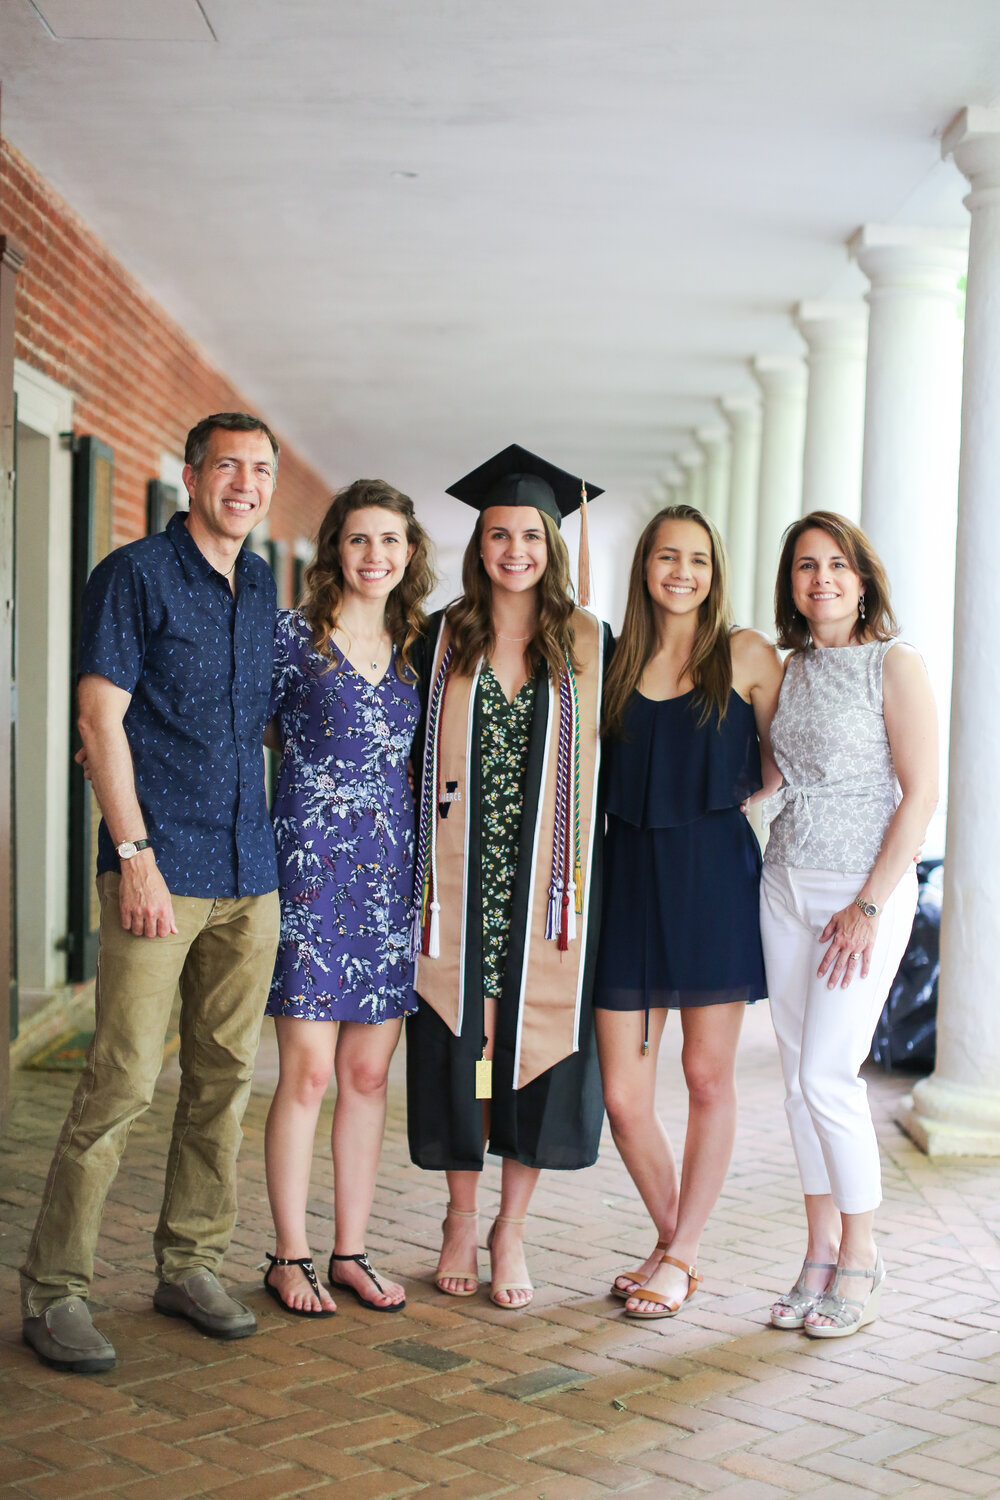  5/18/19  Charlottesville, VA  - Reichle family after UVA graduation.Photo credit: Amanda Maglione 